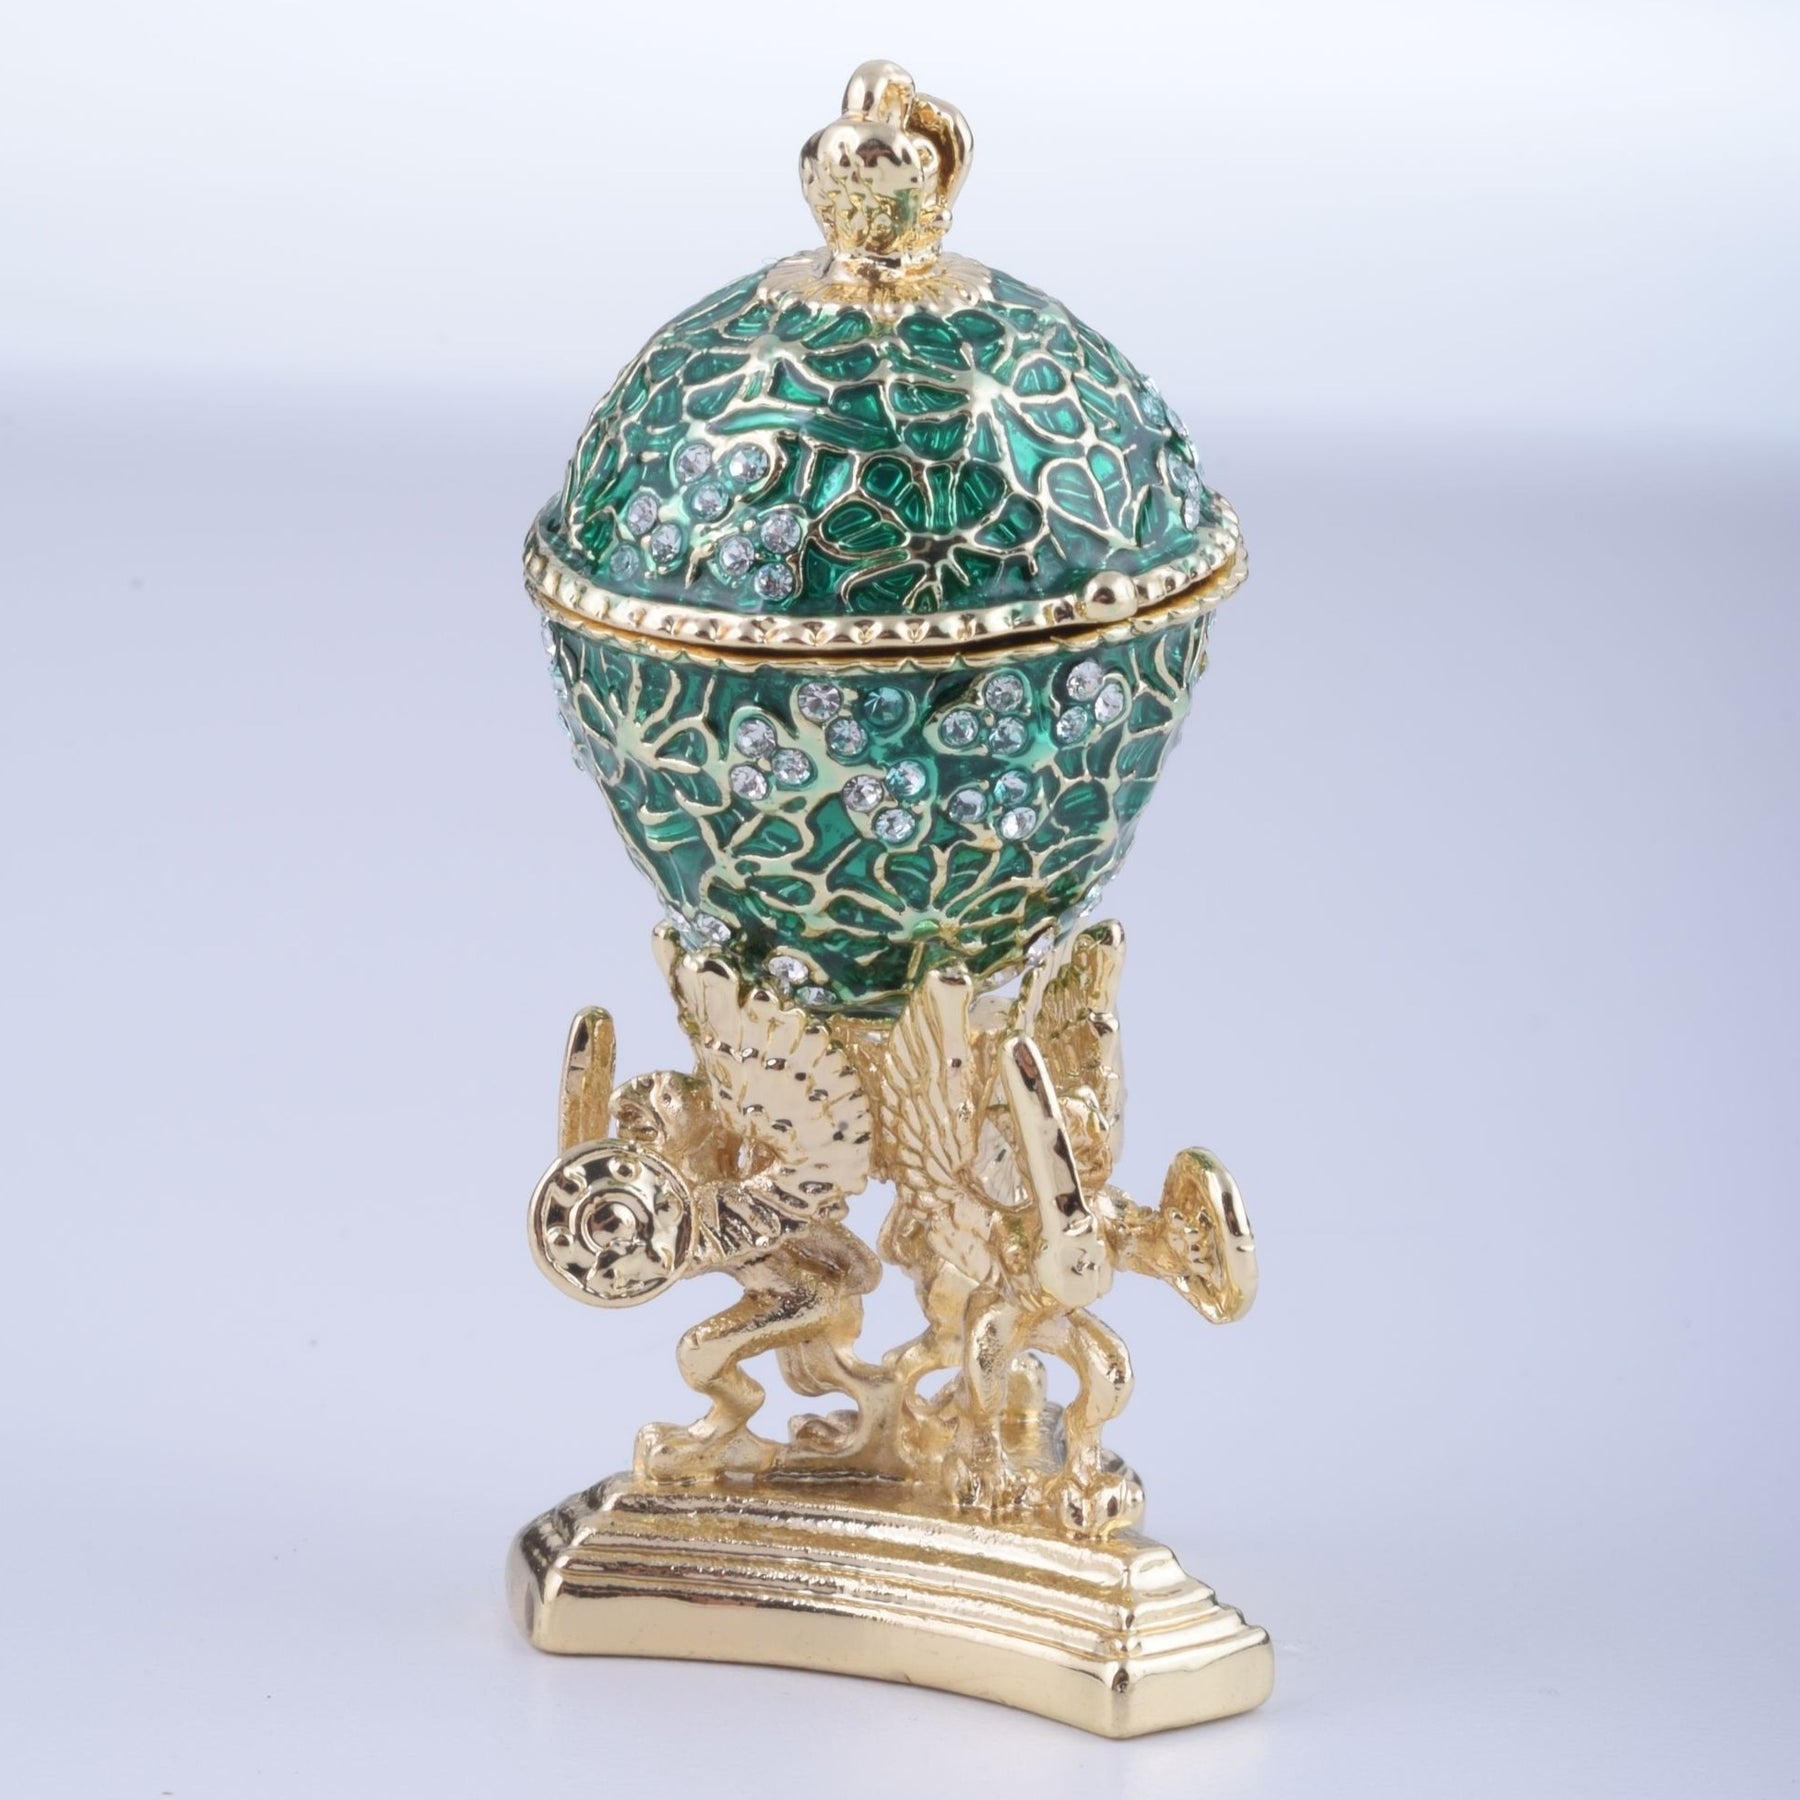 Keren Kopal Green Faberge Egg with a Golden Frog Inside  51.25